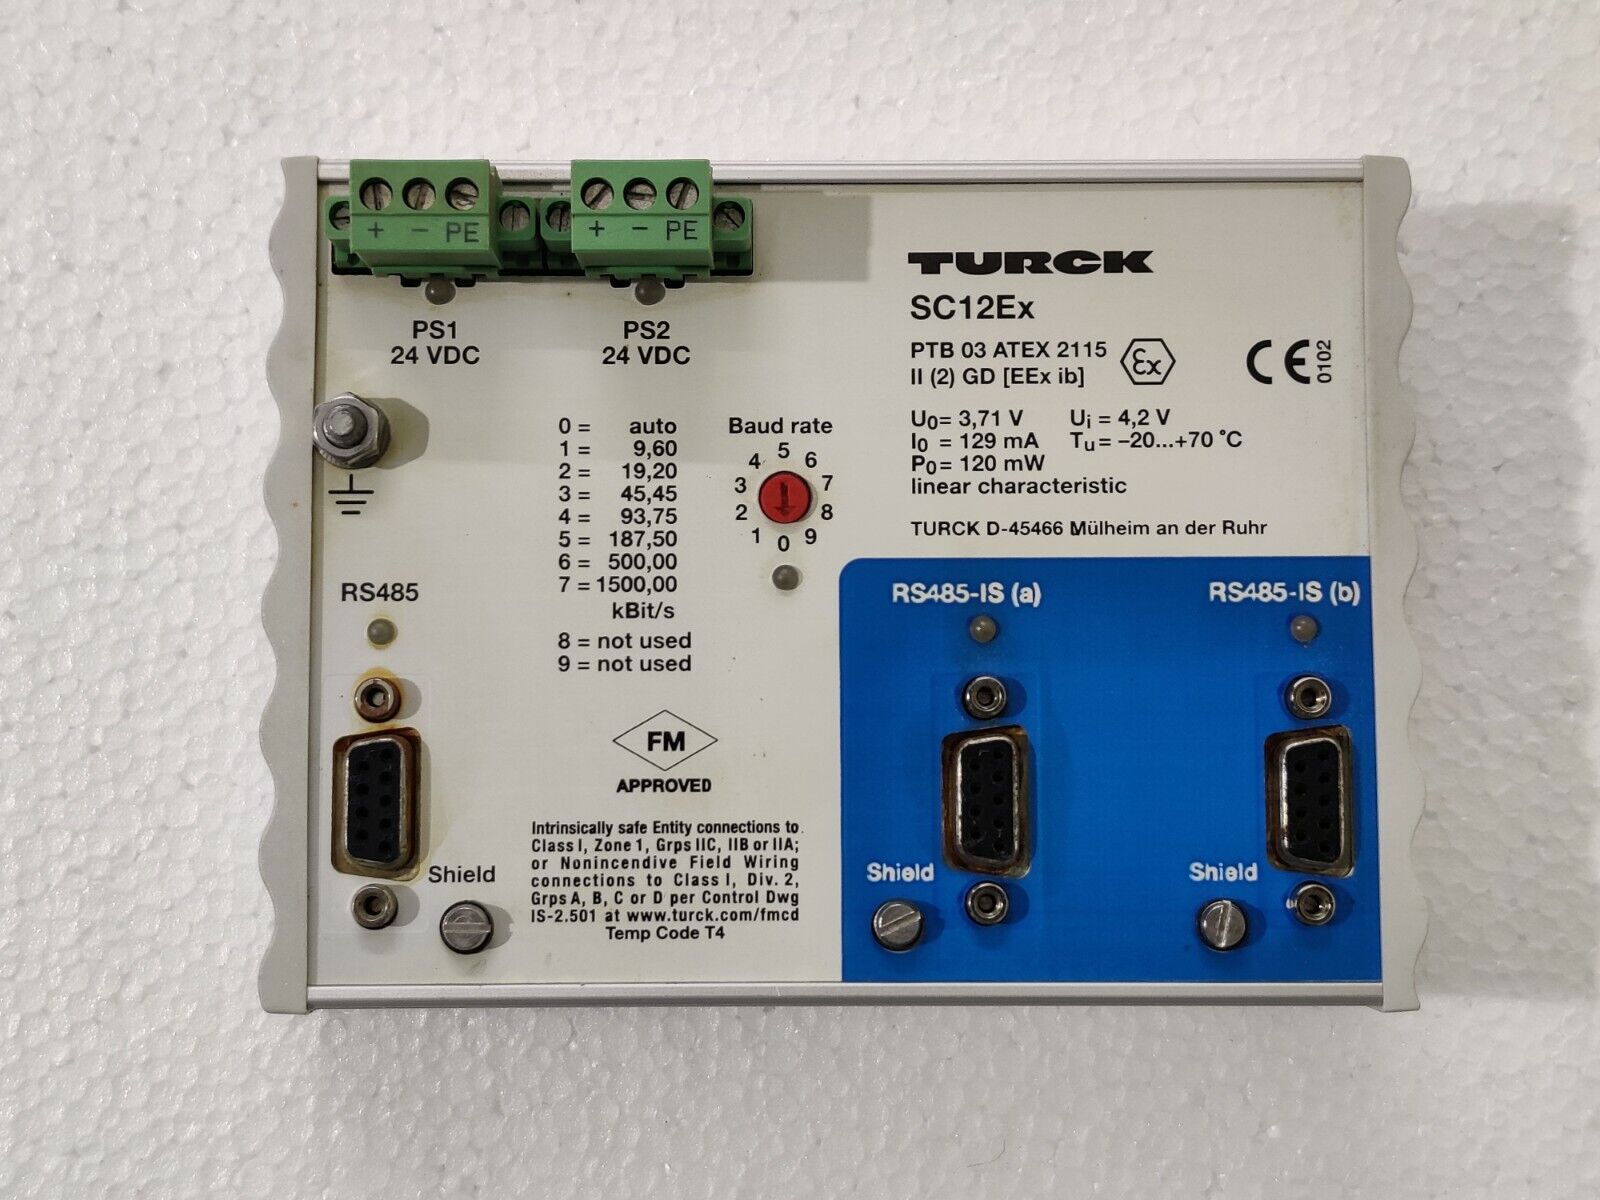 Turck SC12Ex Modular I/O PTB 03 ATEX 2115